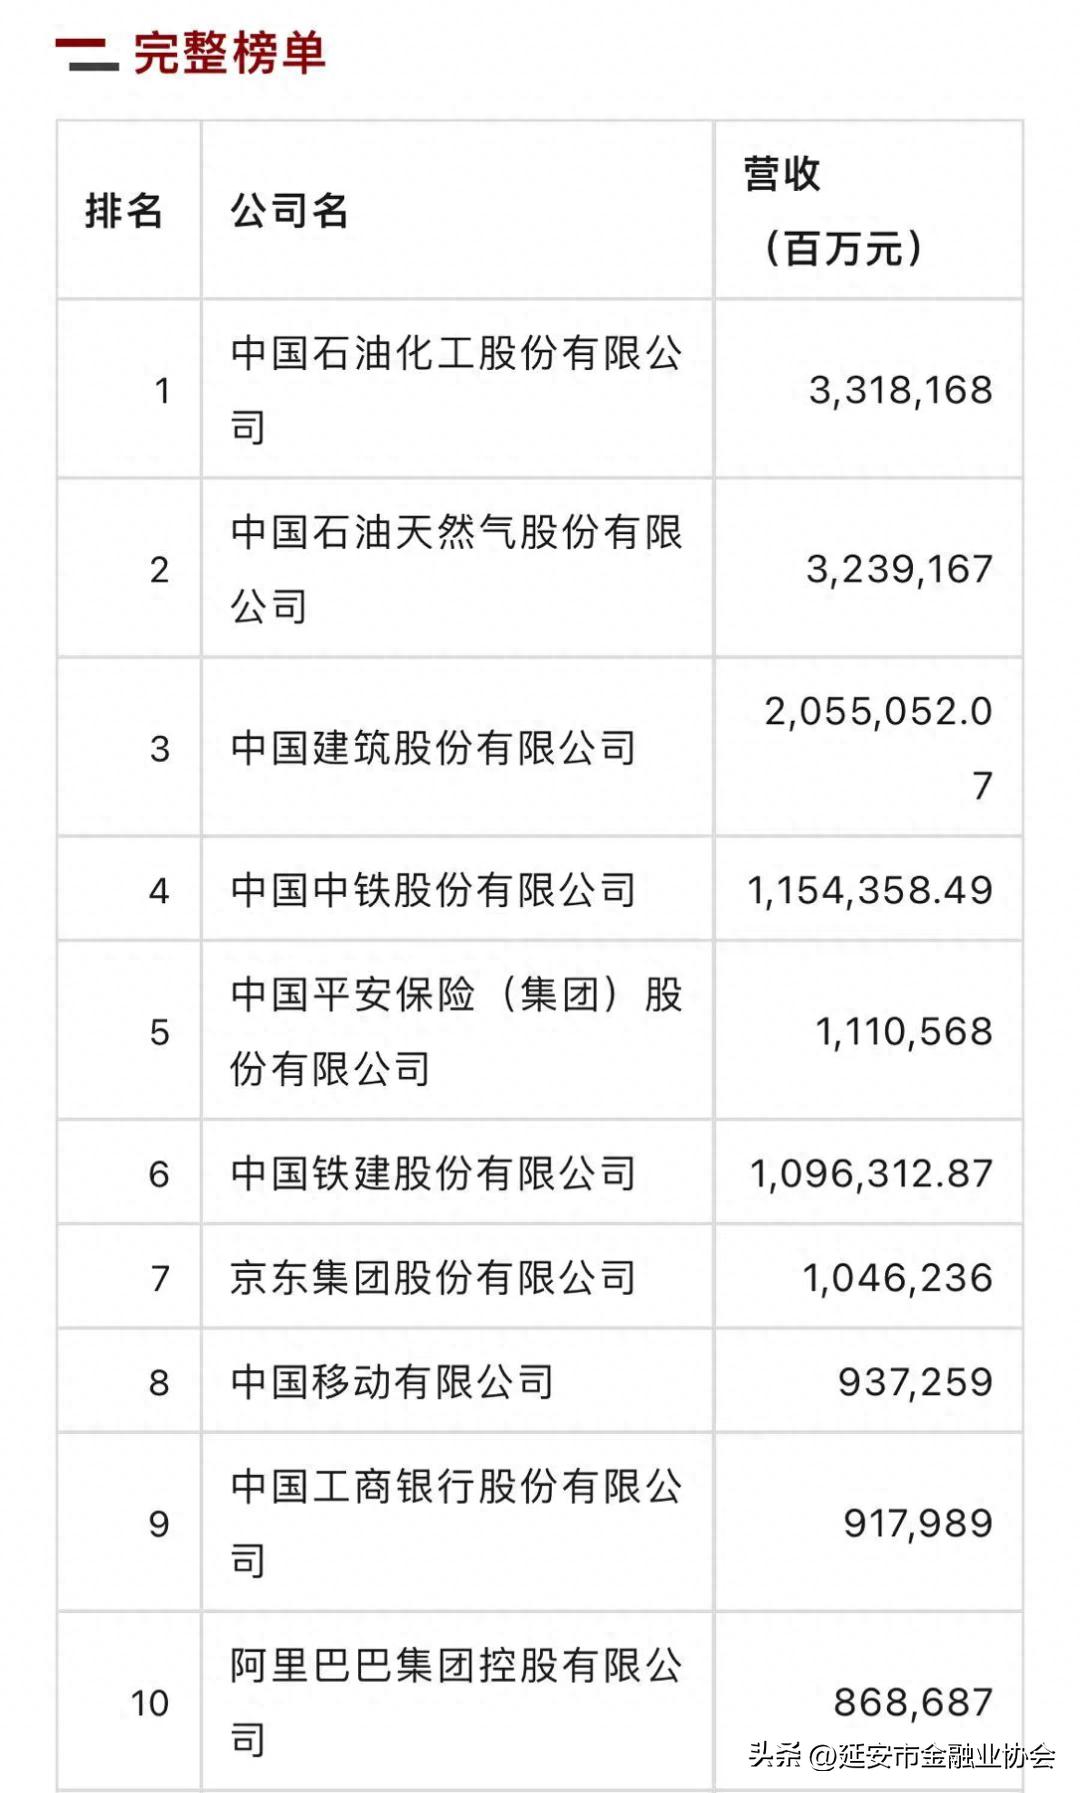 中国保险公司排名前十